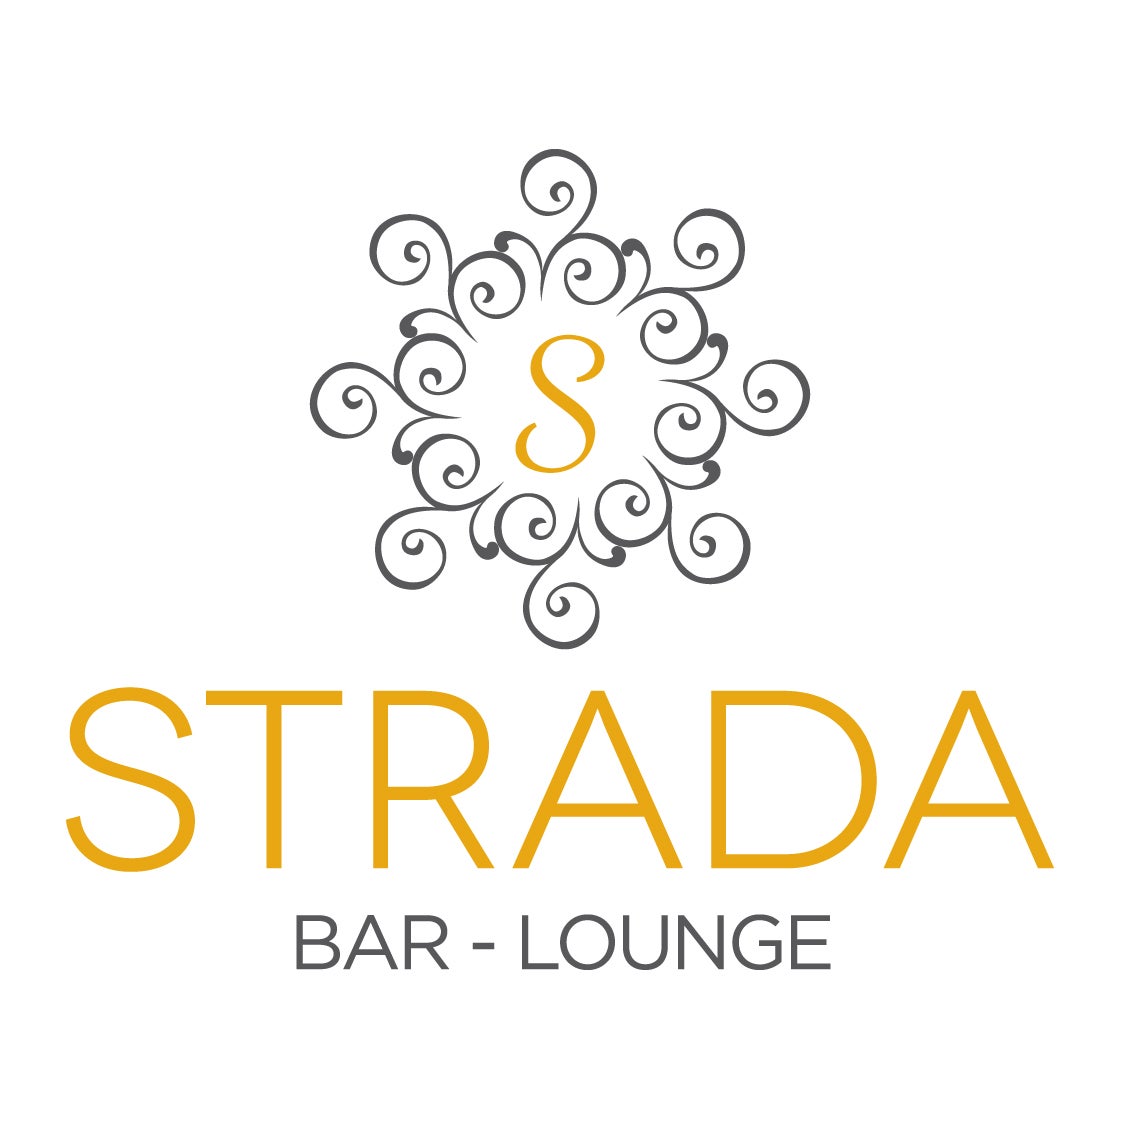 Eltham Gateway Hotel – Strada Bar and Lounge